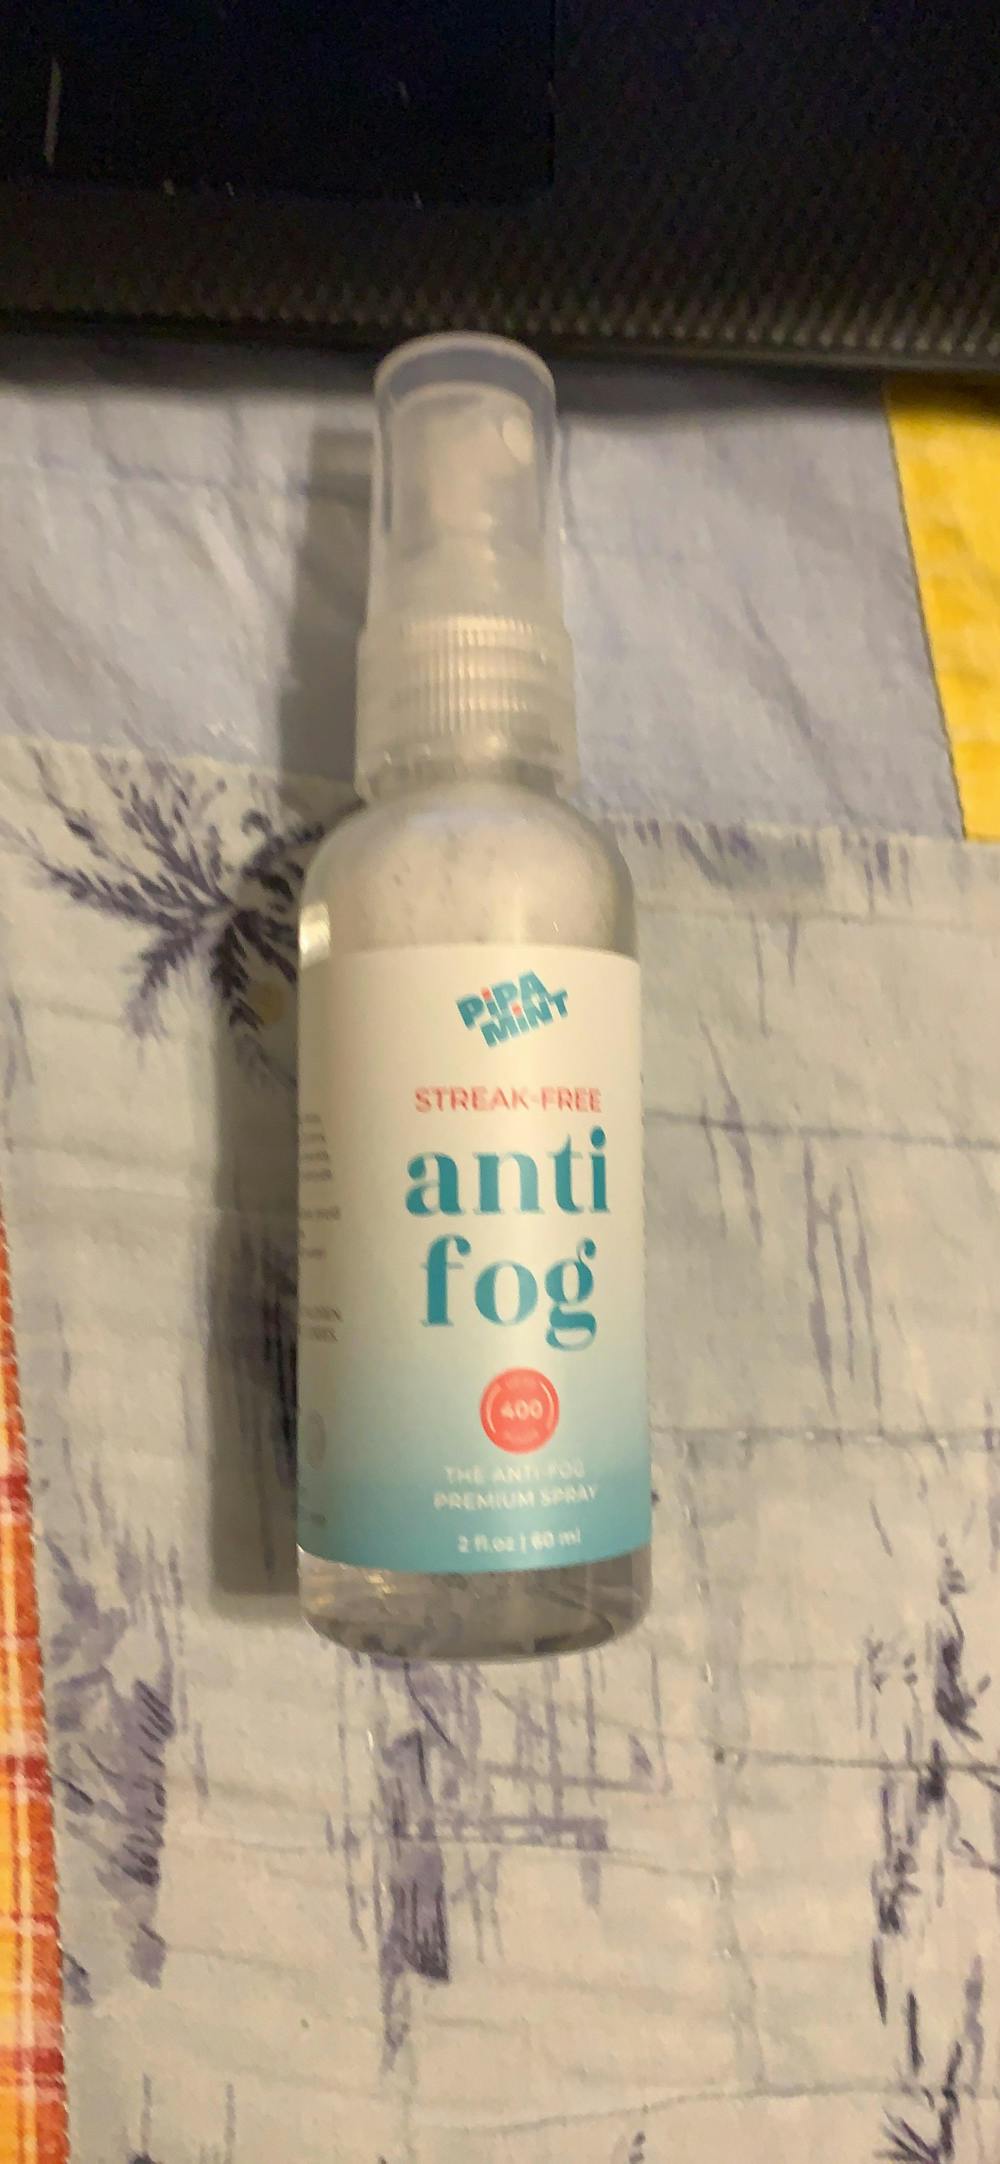 Anti-Fog Spray KIt